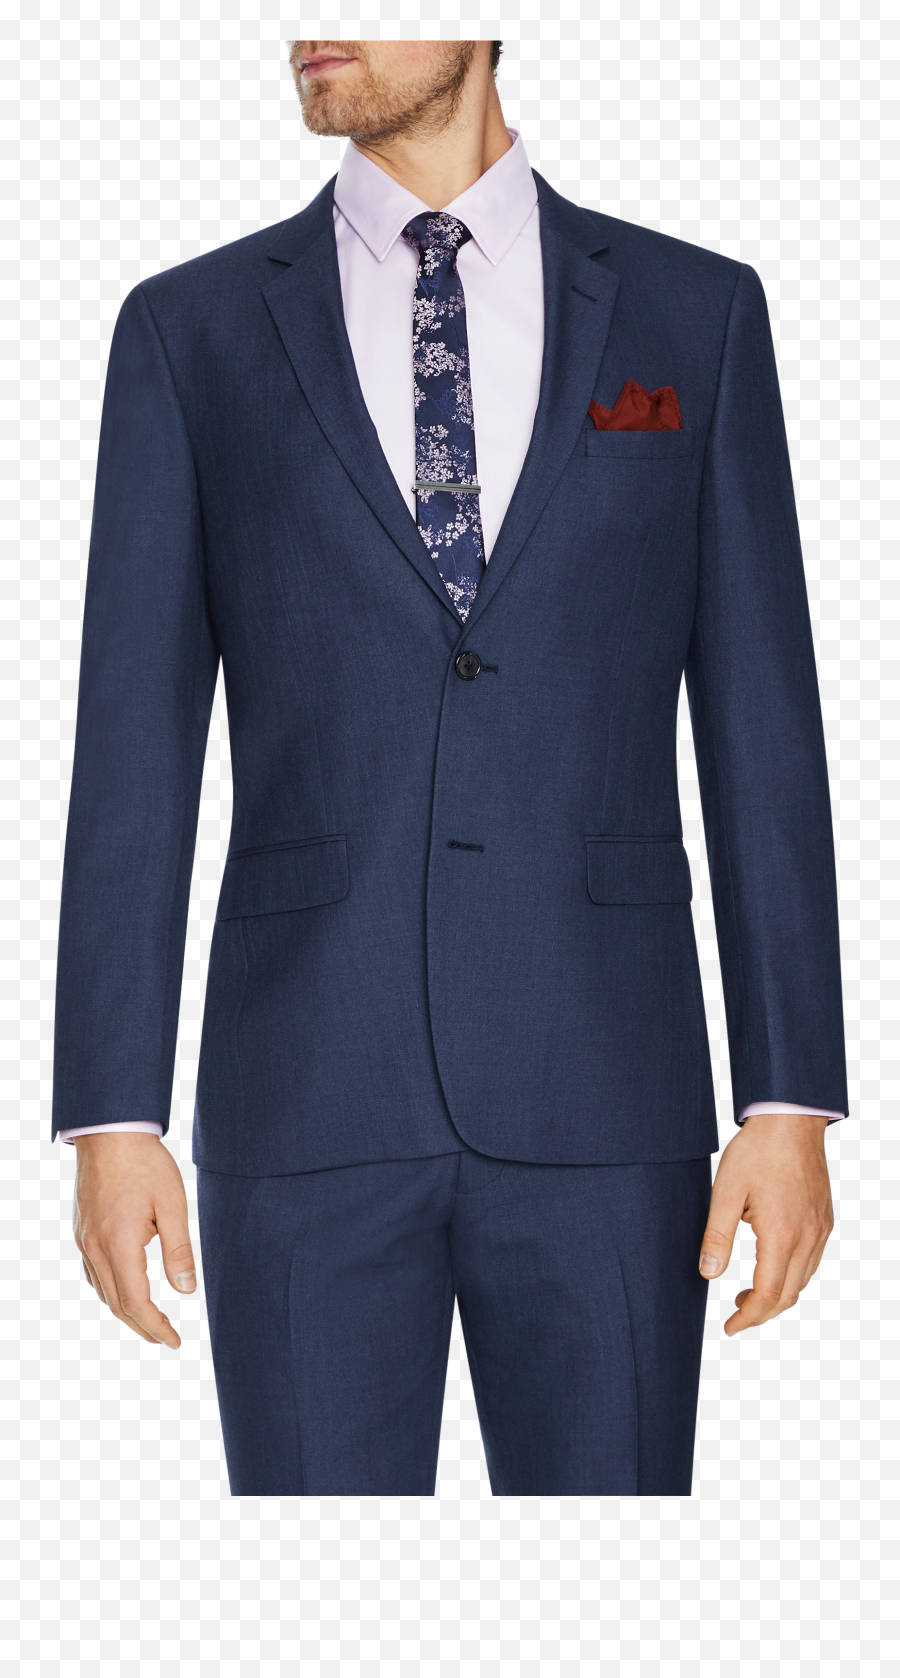 Douglas 2 Button Suit - Brown Suit Shirt Tie Combinations Png,Man In ...